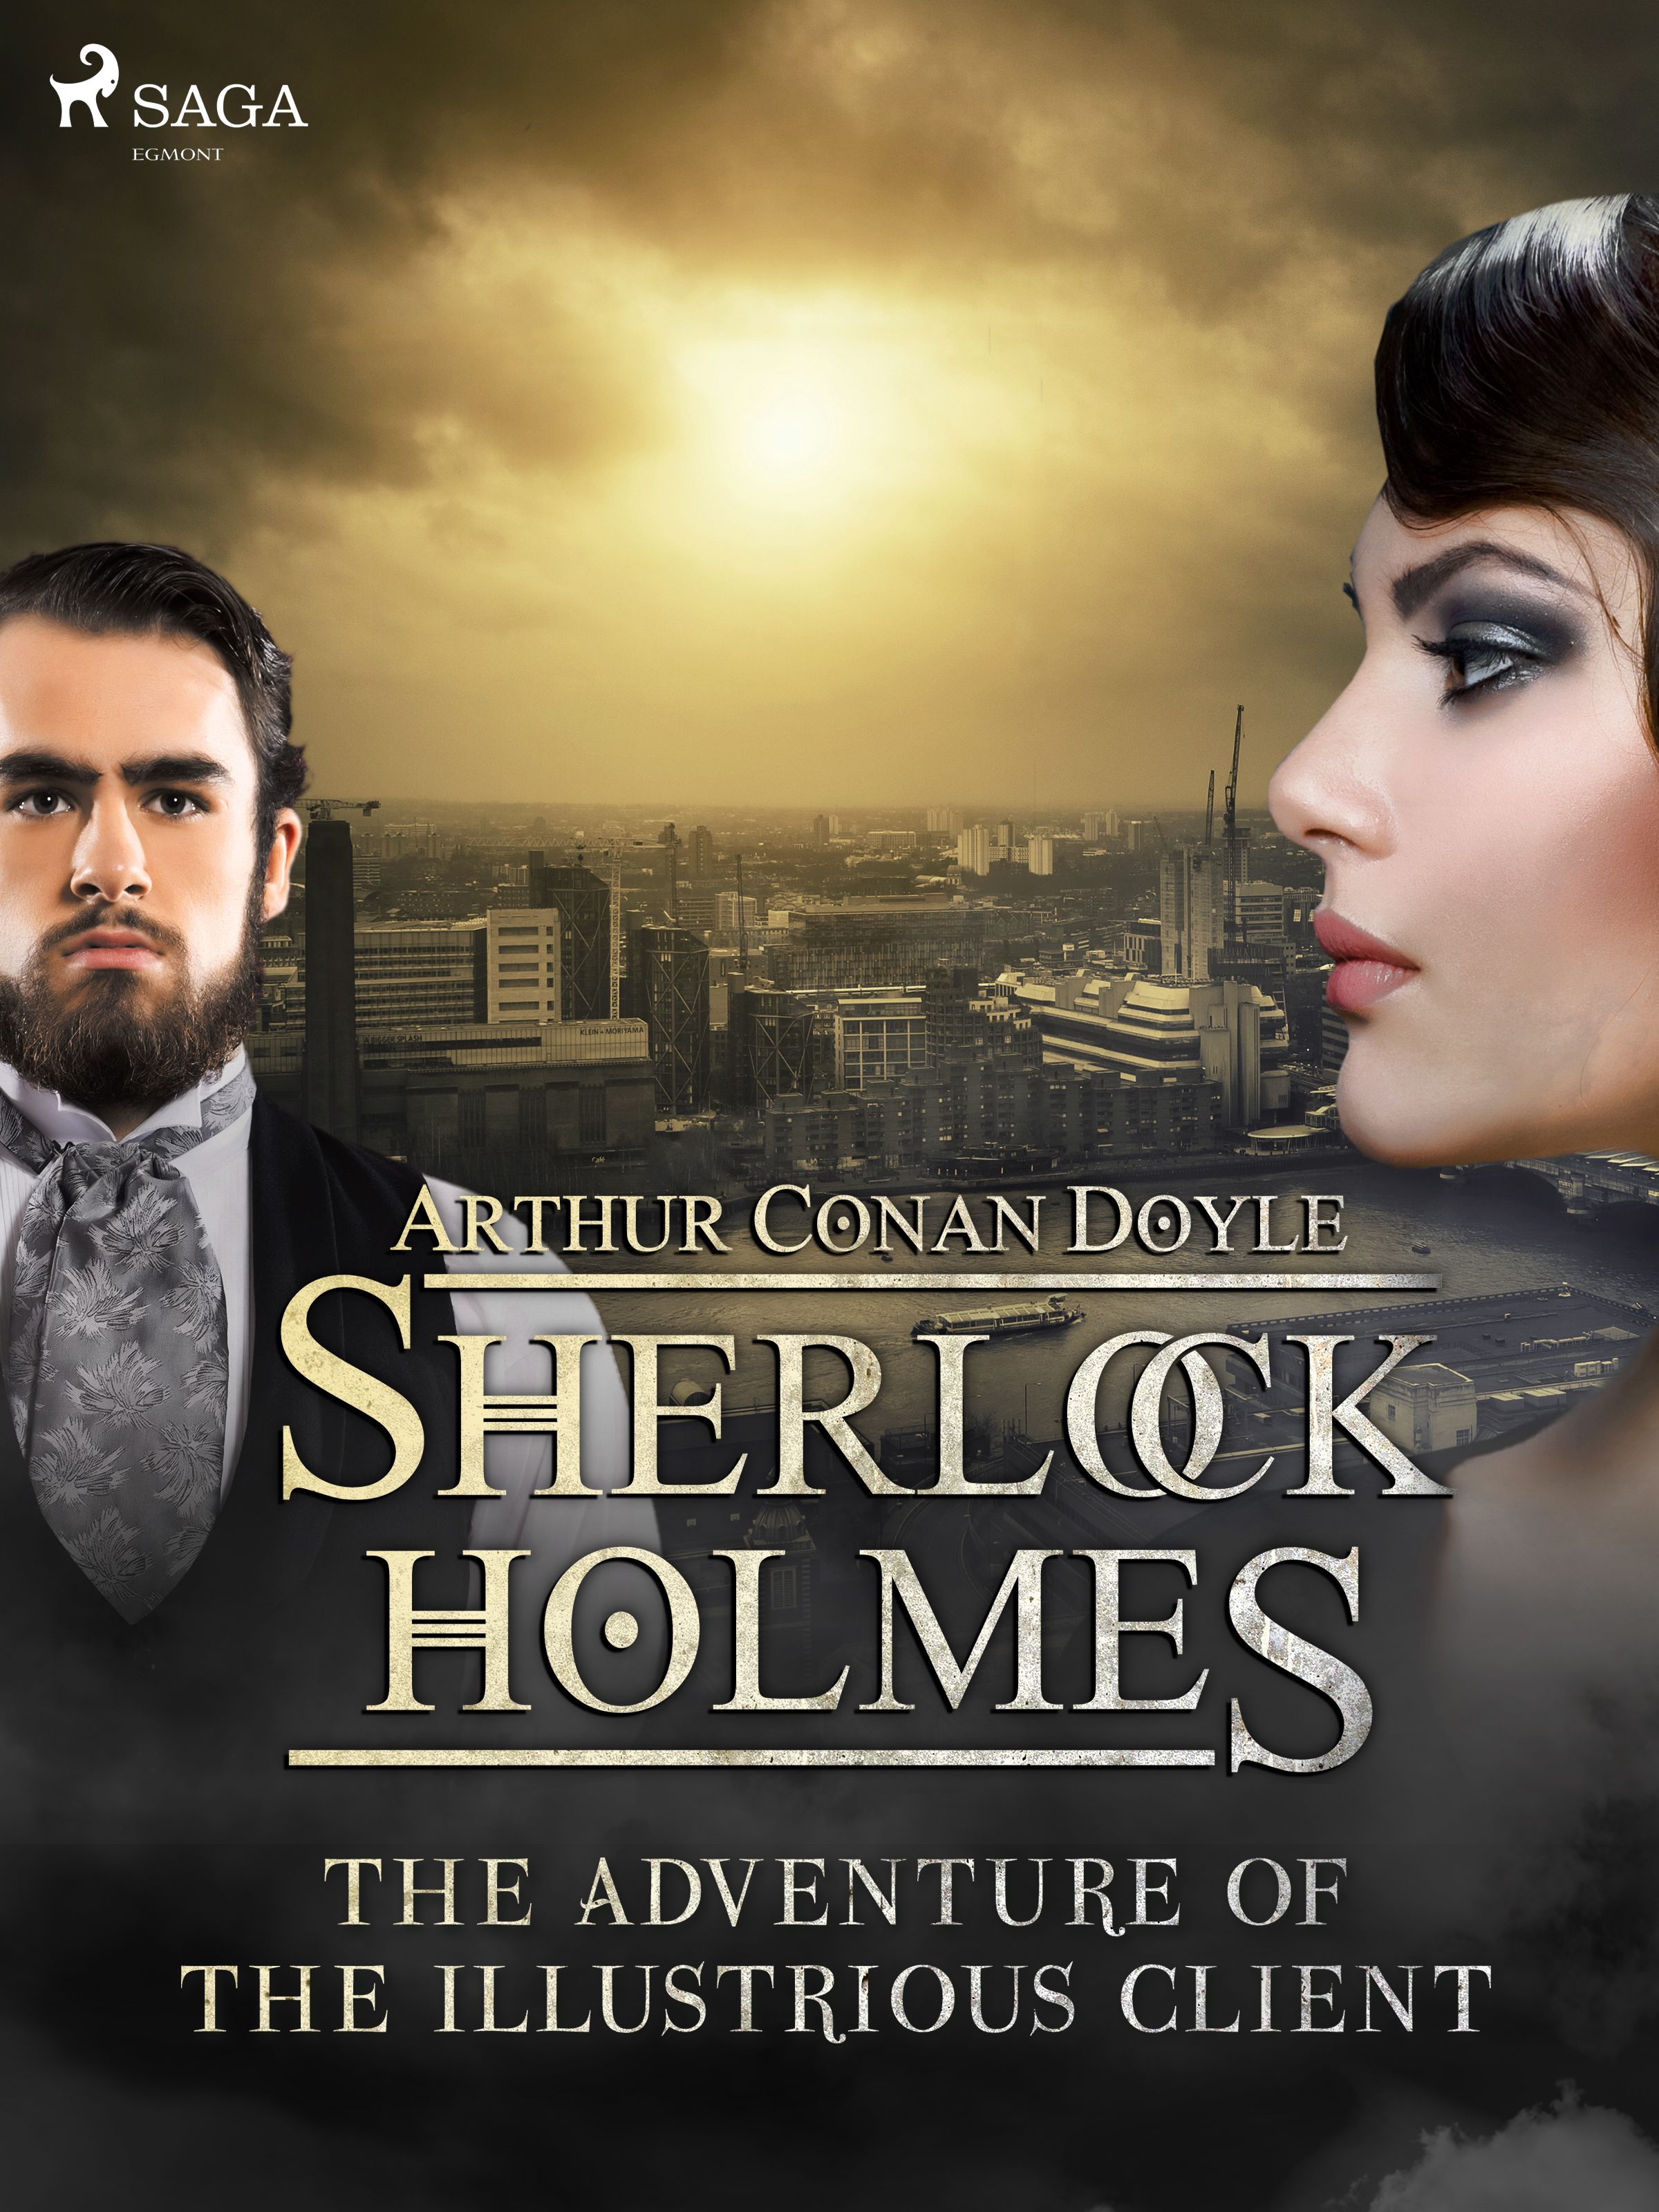 The Adventure of the Illustrious Client, e-bog af Arthur Conan Doyle